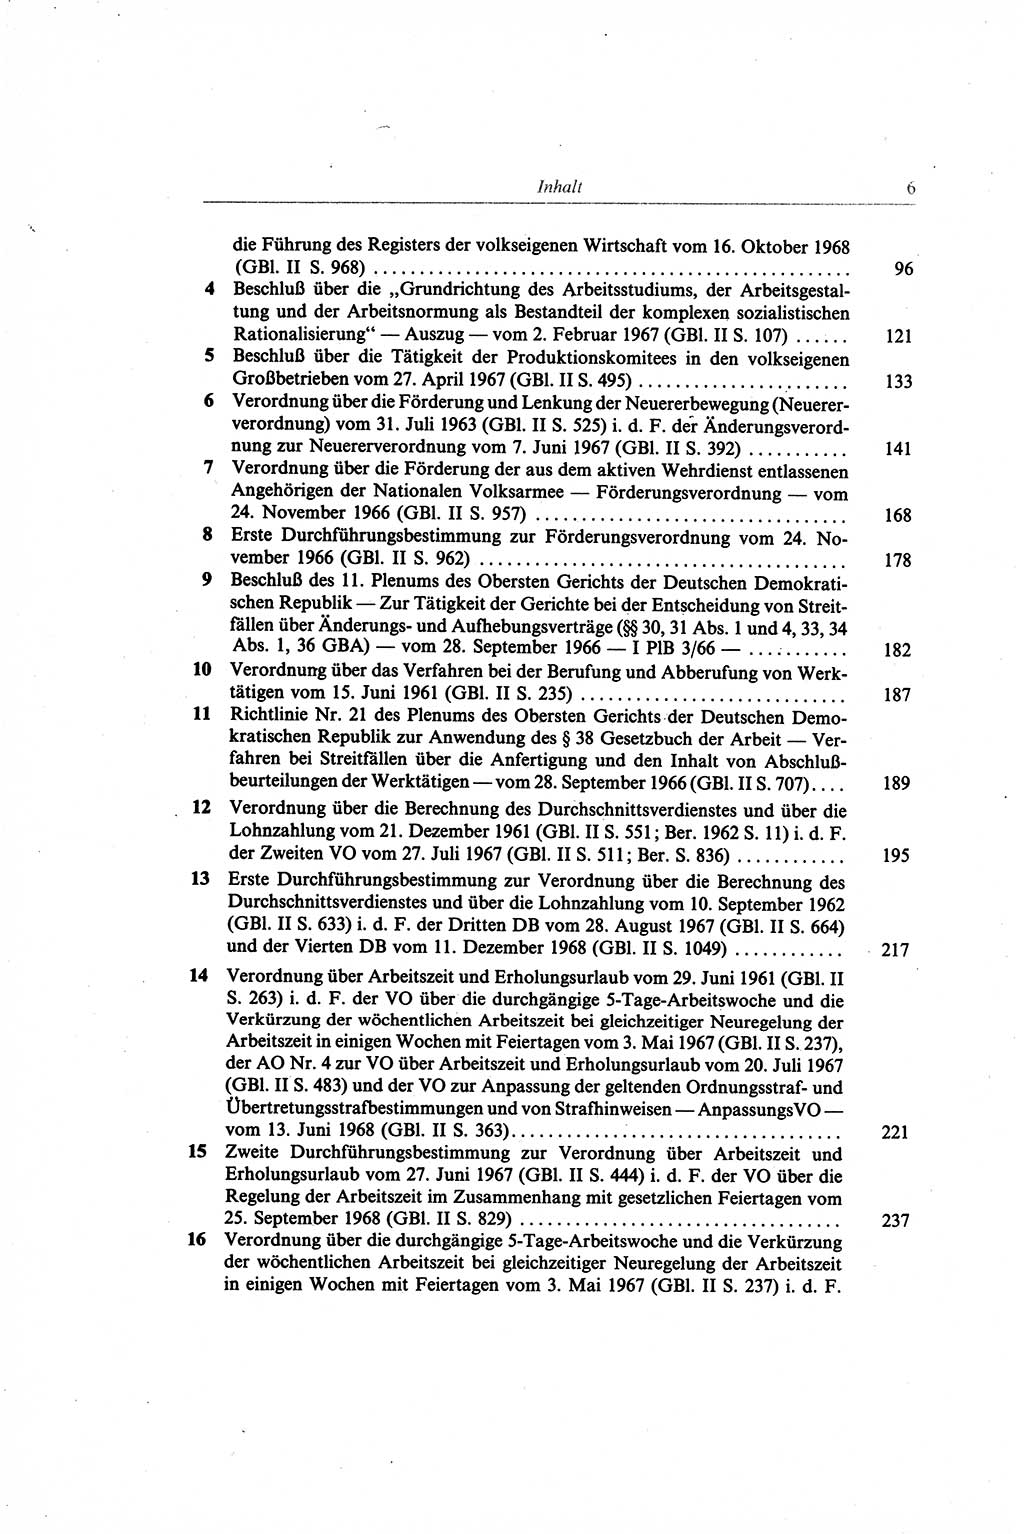 Gesetzbuch der Arbeit (GBA) und andere ausgewählte rechtliche Bestimmungen [Deutsche Demokratische Republik (DDR)] 1968, Seite 6 (GBA DDR 1968, S. 6)